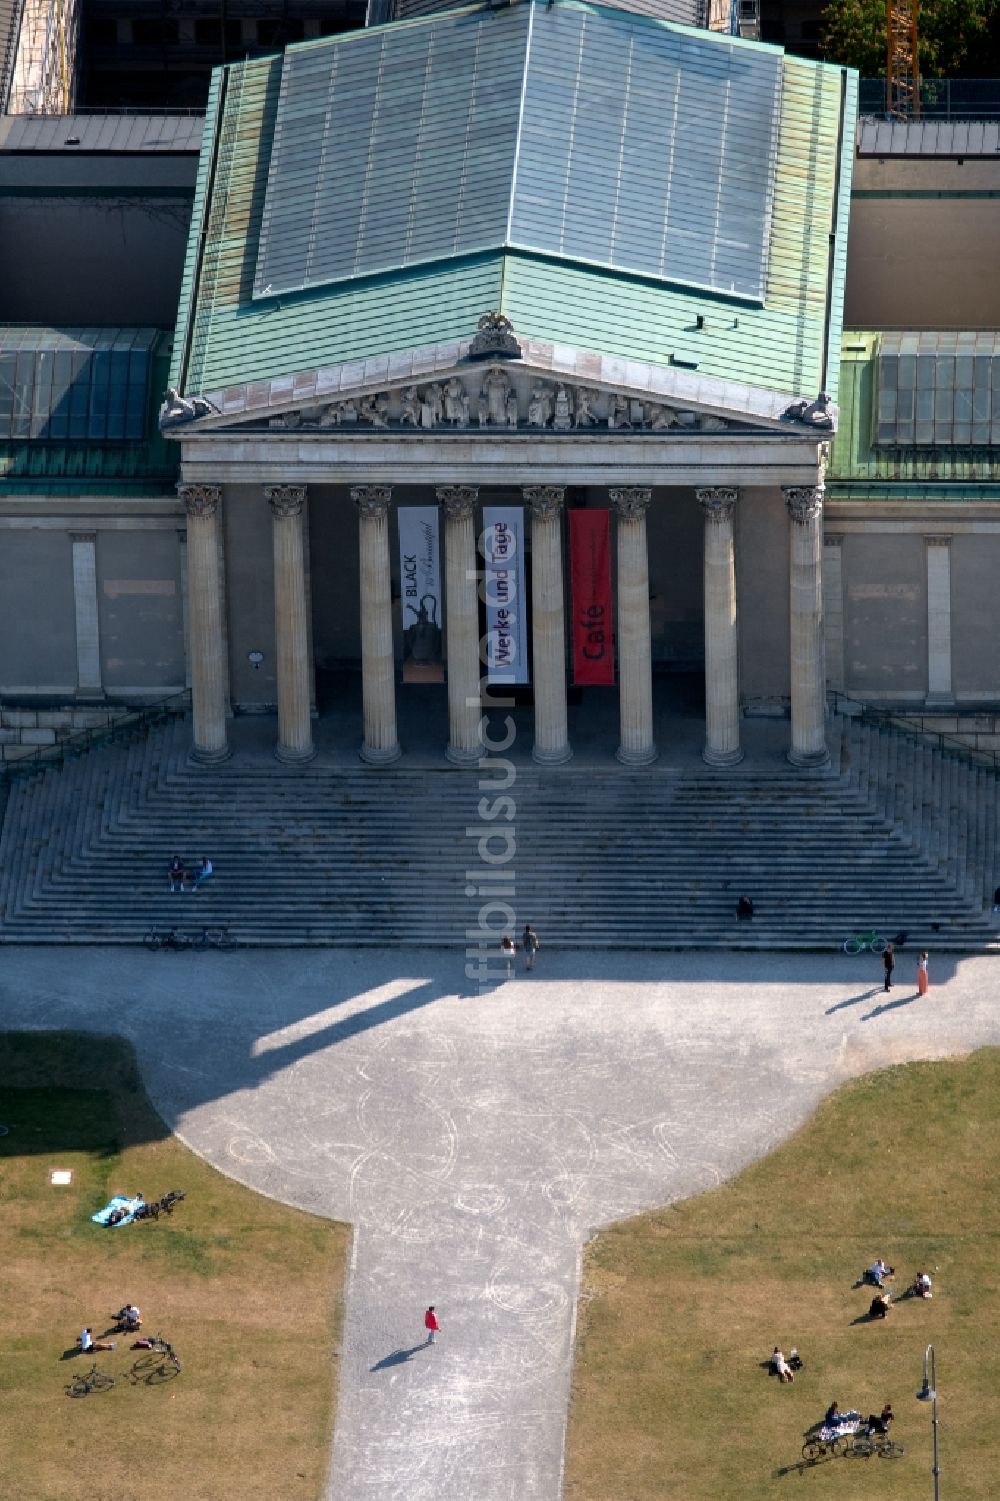 München aus der Vogelperspektive: Museum Glyptothek am Königsplatz in München im Bundesland Bayern, Deutschland